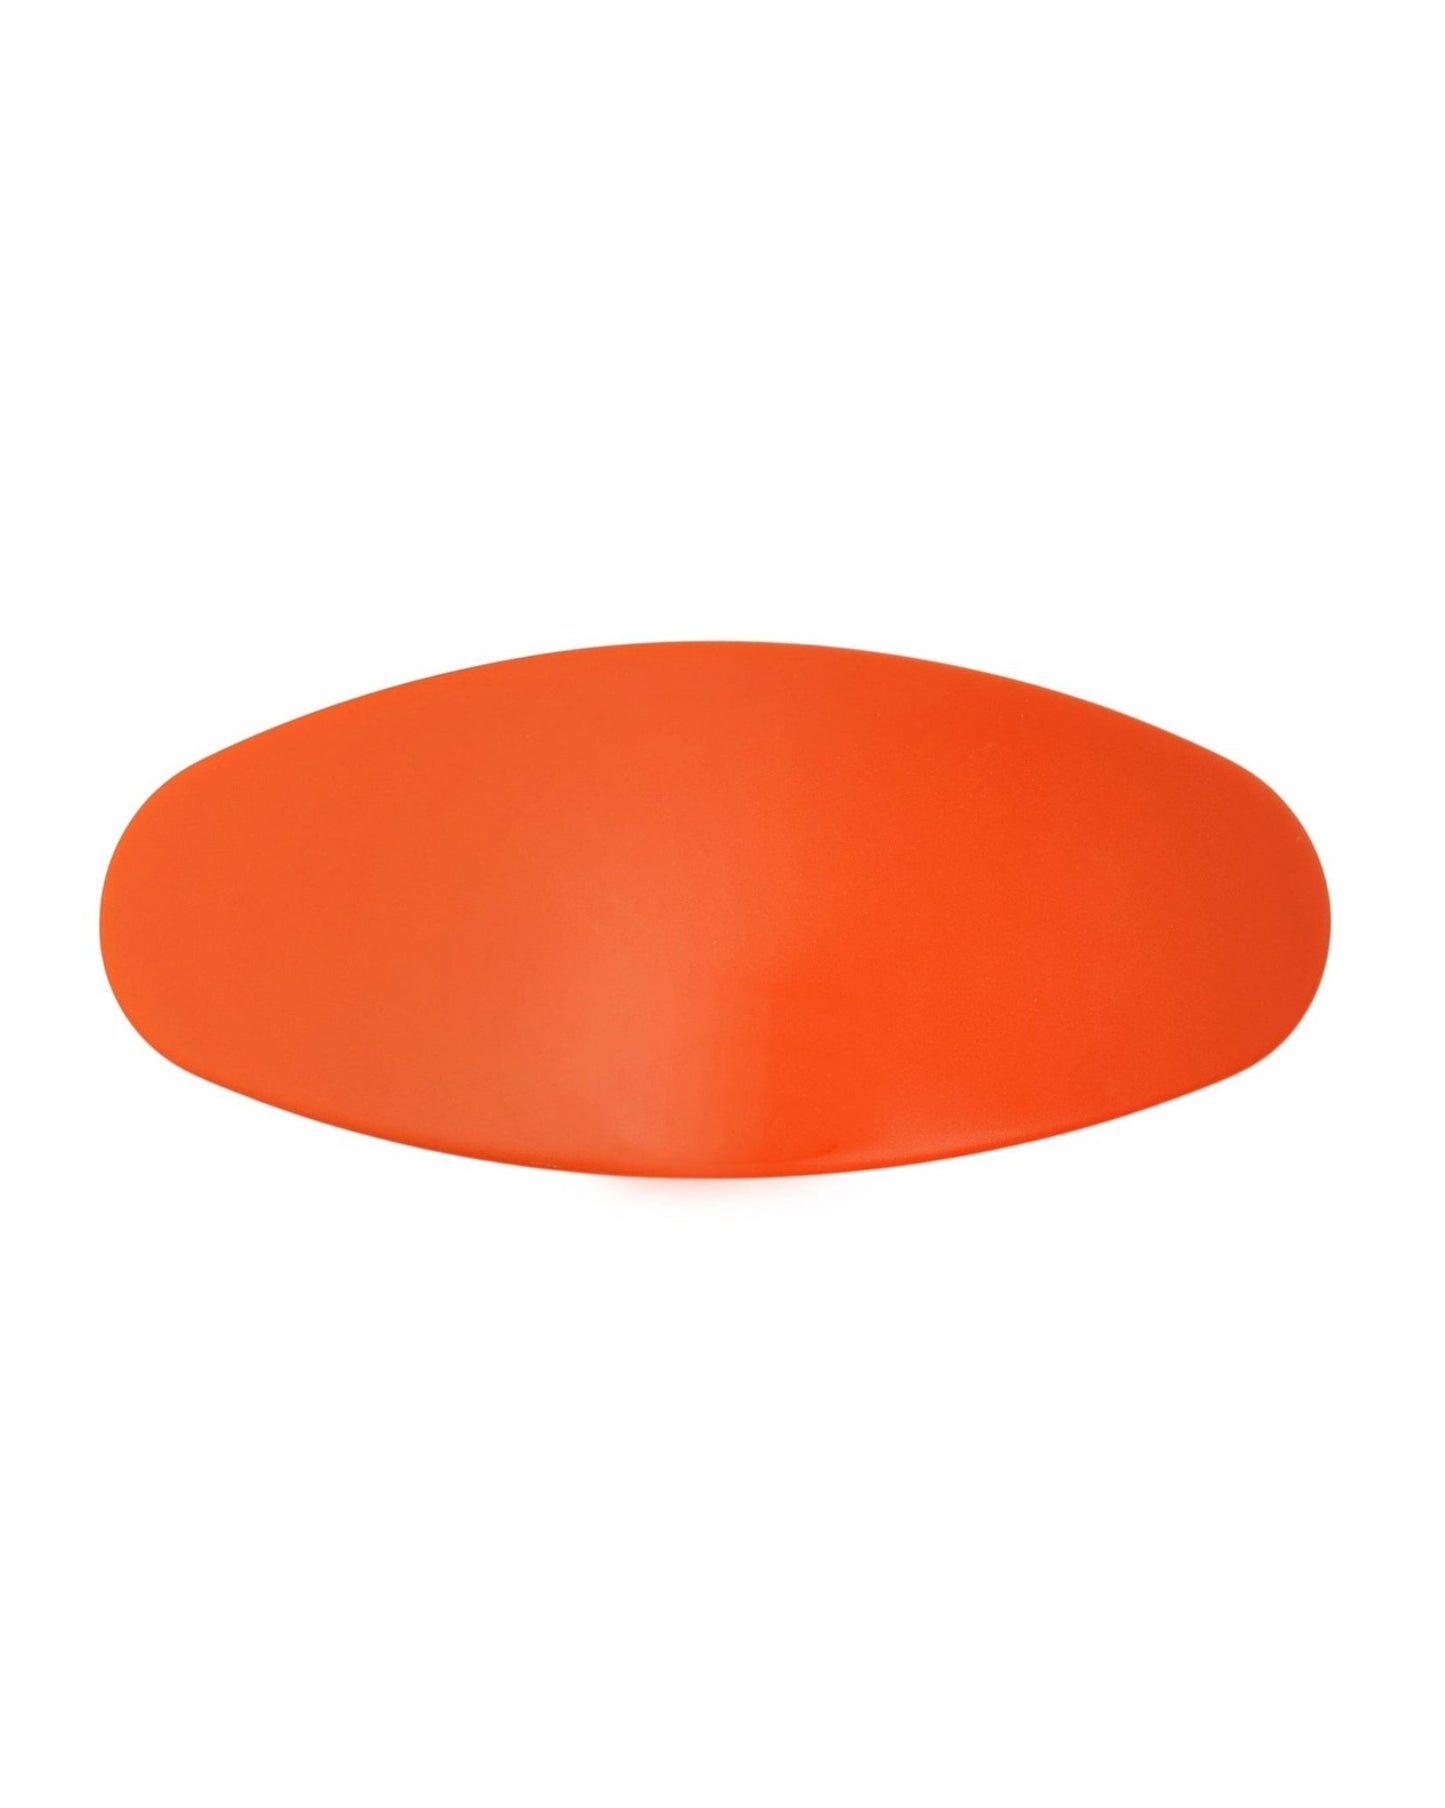 Jumbo Oval Clip in Bright Orange - MACHETE